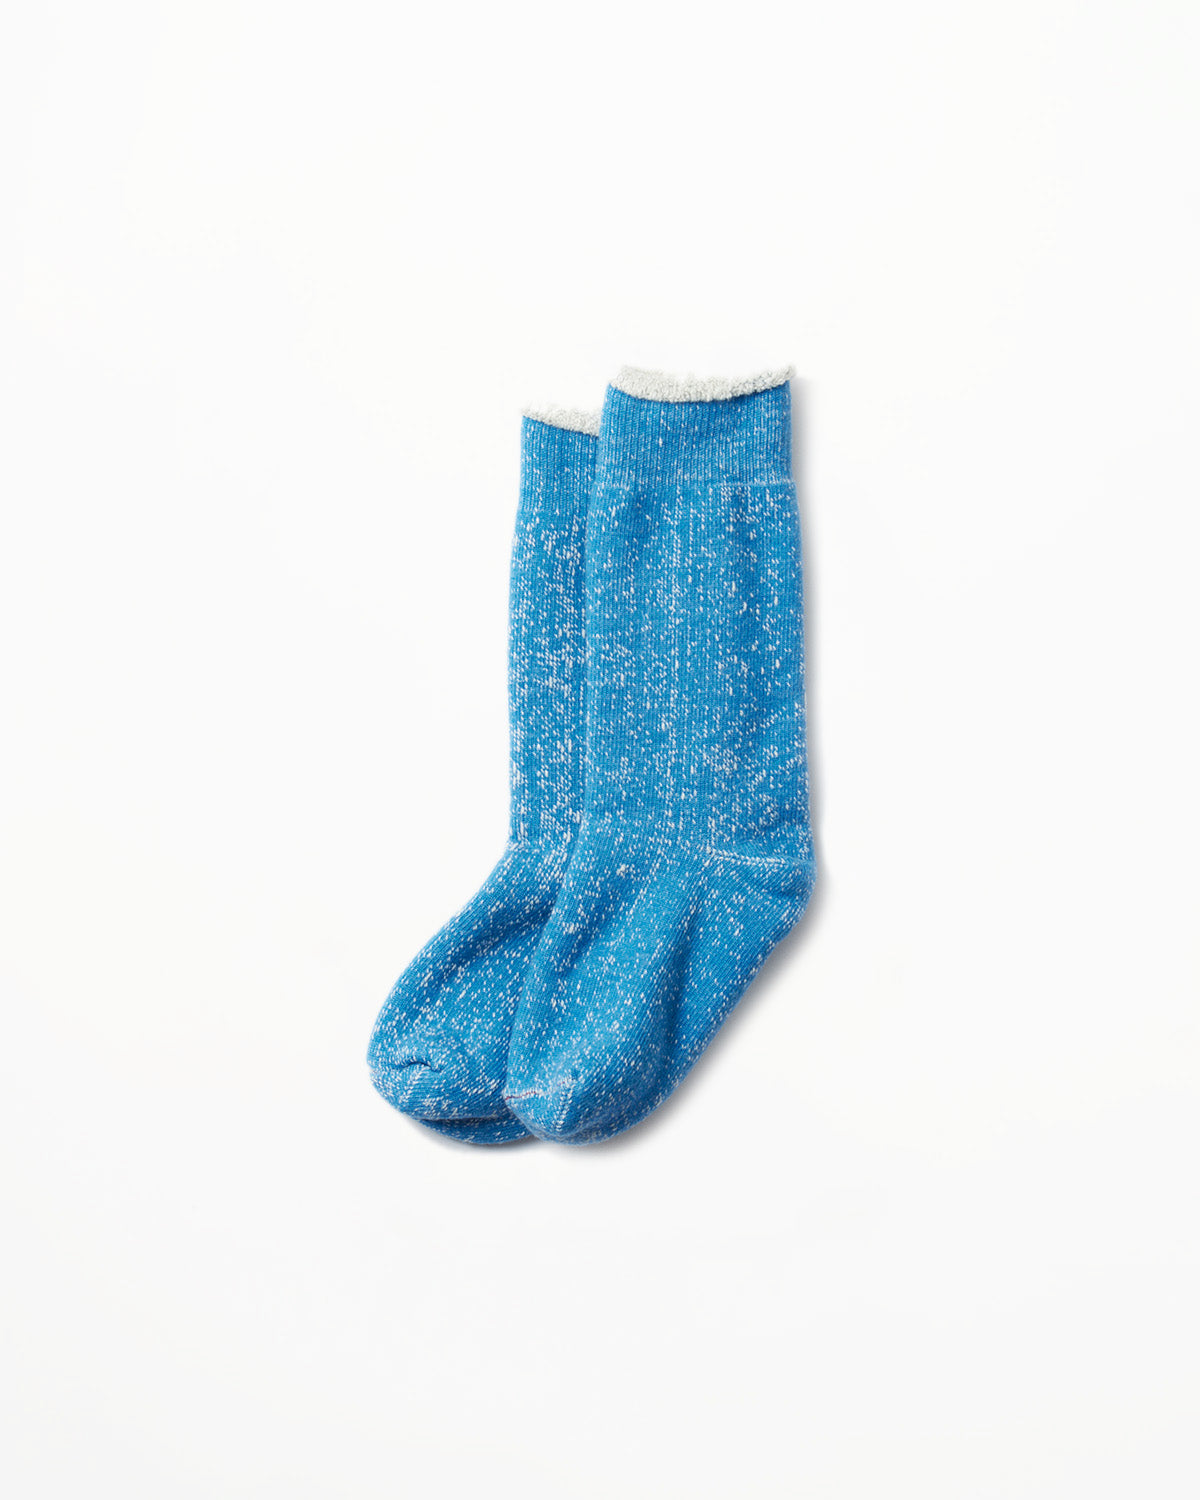 R1001 - Double Face Crew Socks Merino Wool OG - Blue